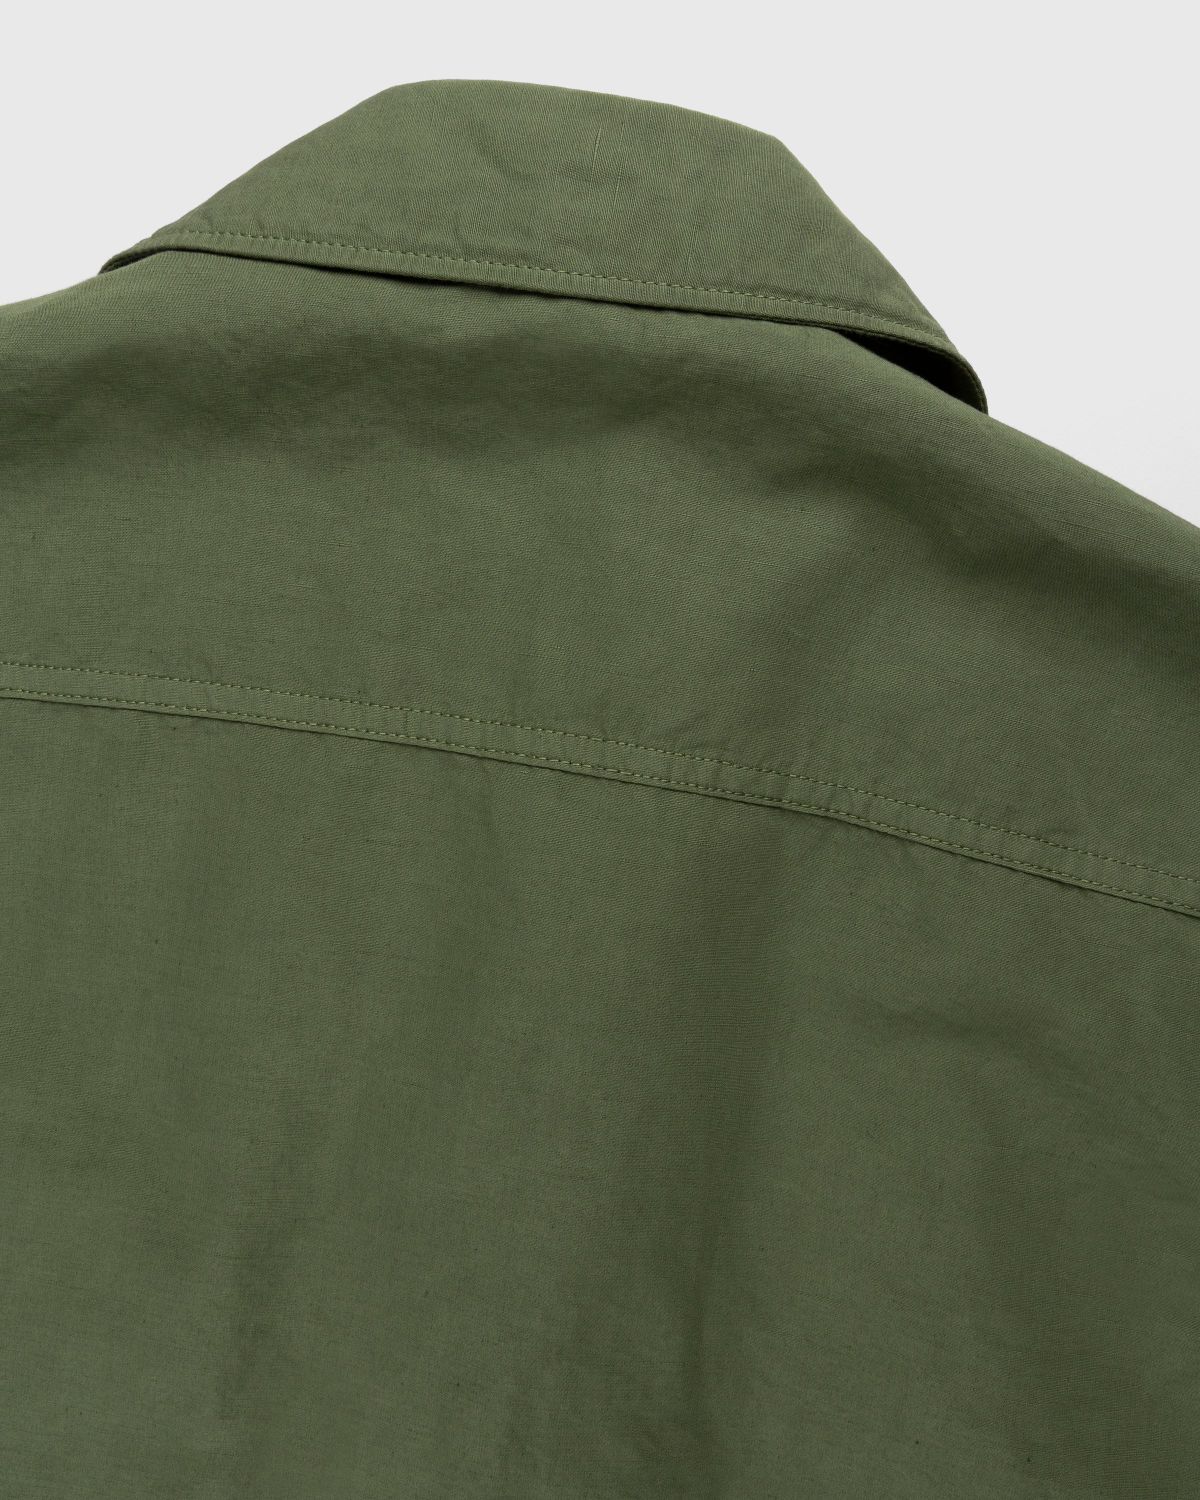 Stone Island – 42406 Garment-Dyed Shirt Jacket With Detachable Vest Olive - Shortsleeve Shirts - Green - Image 4